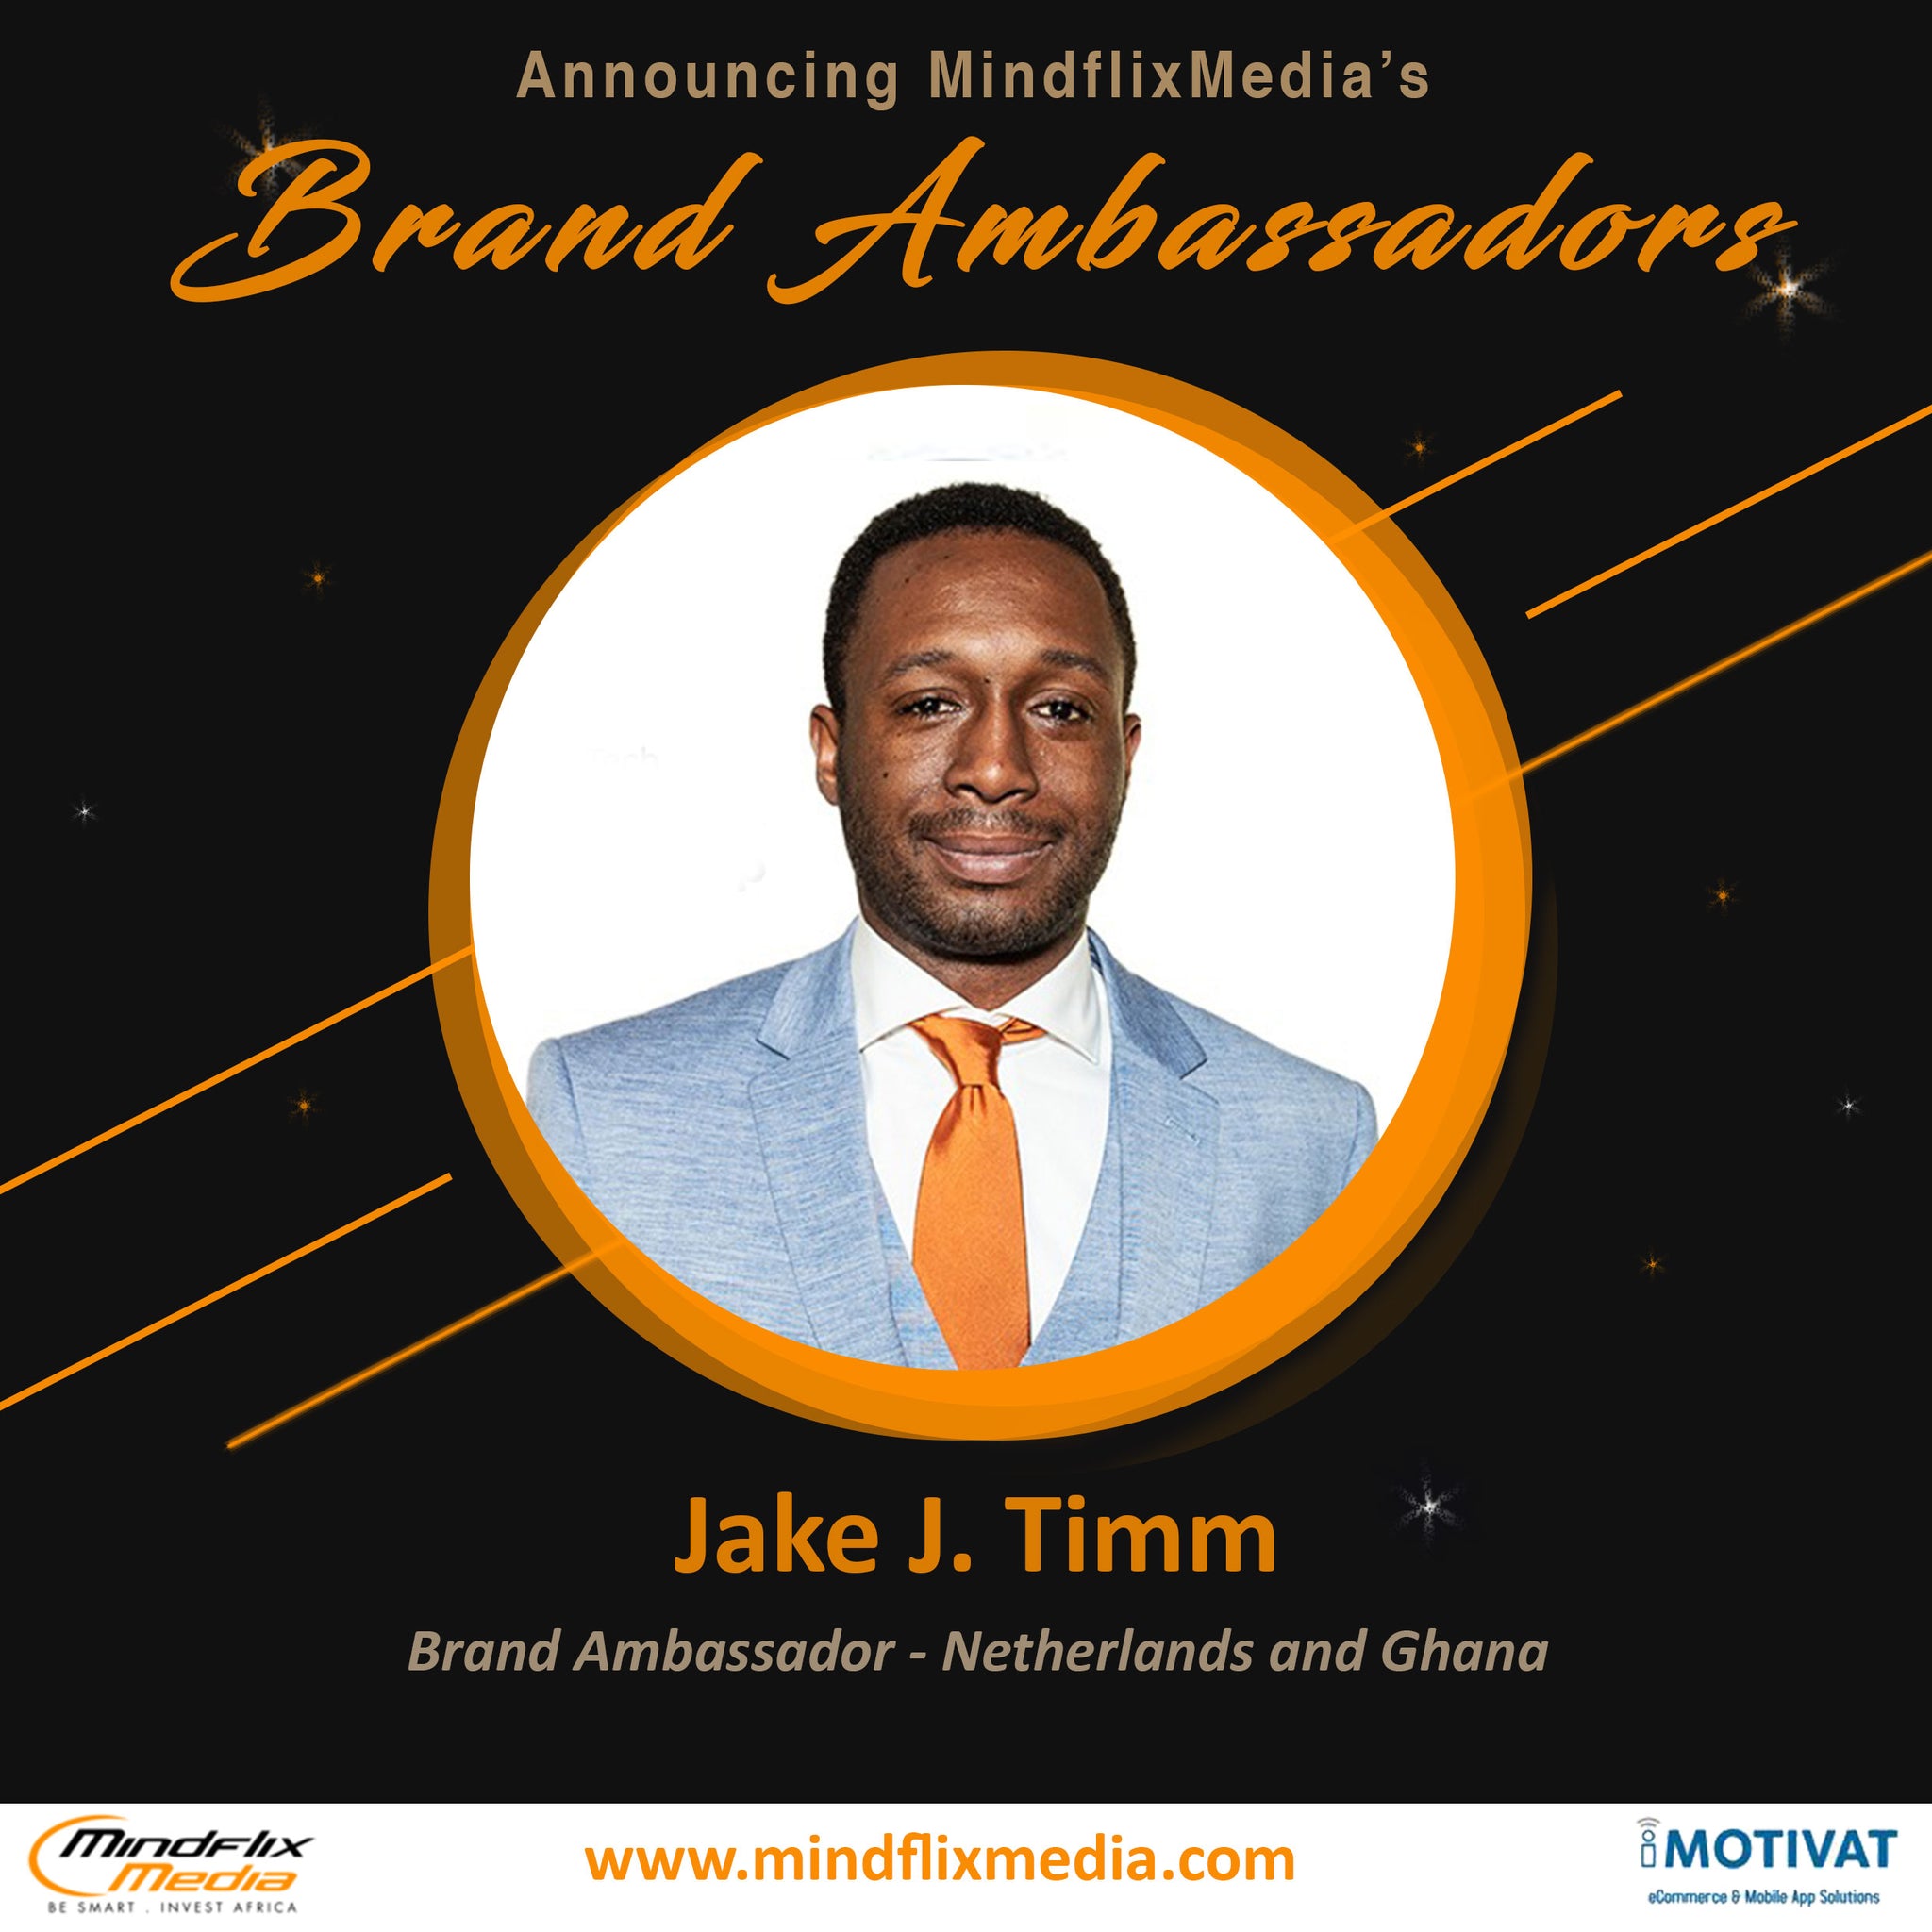 Jake J. Timm - Brand Ambassador - Netherlands and Ghana